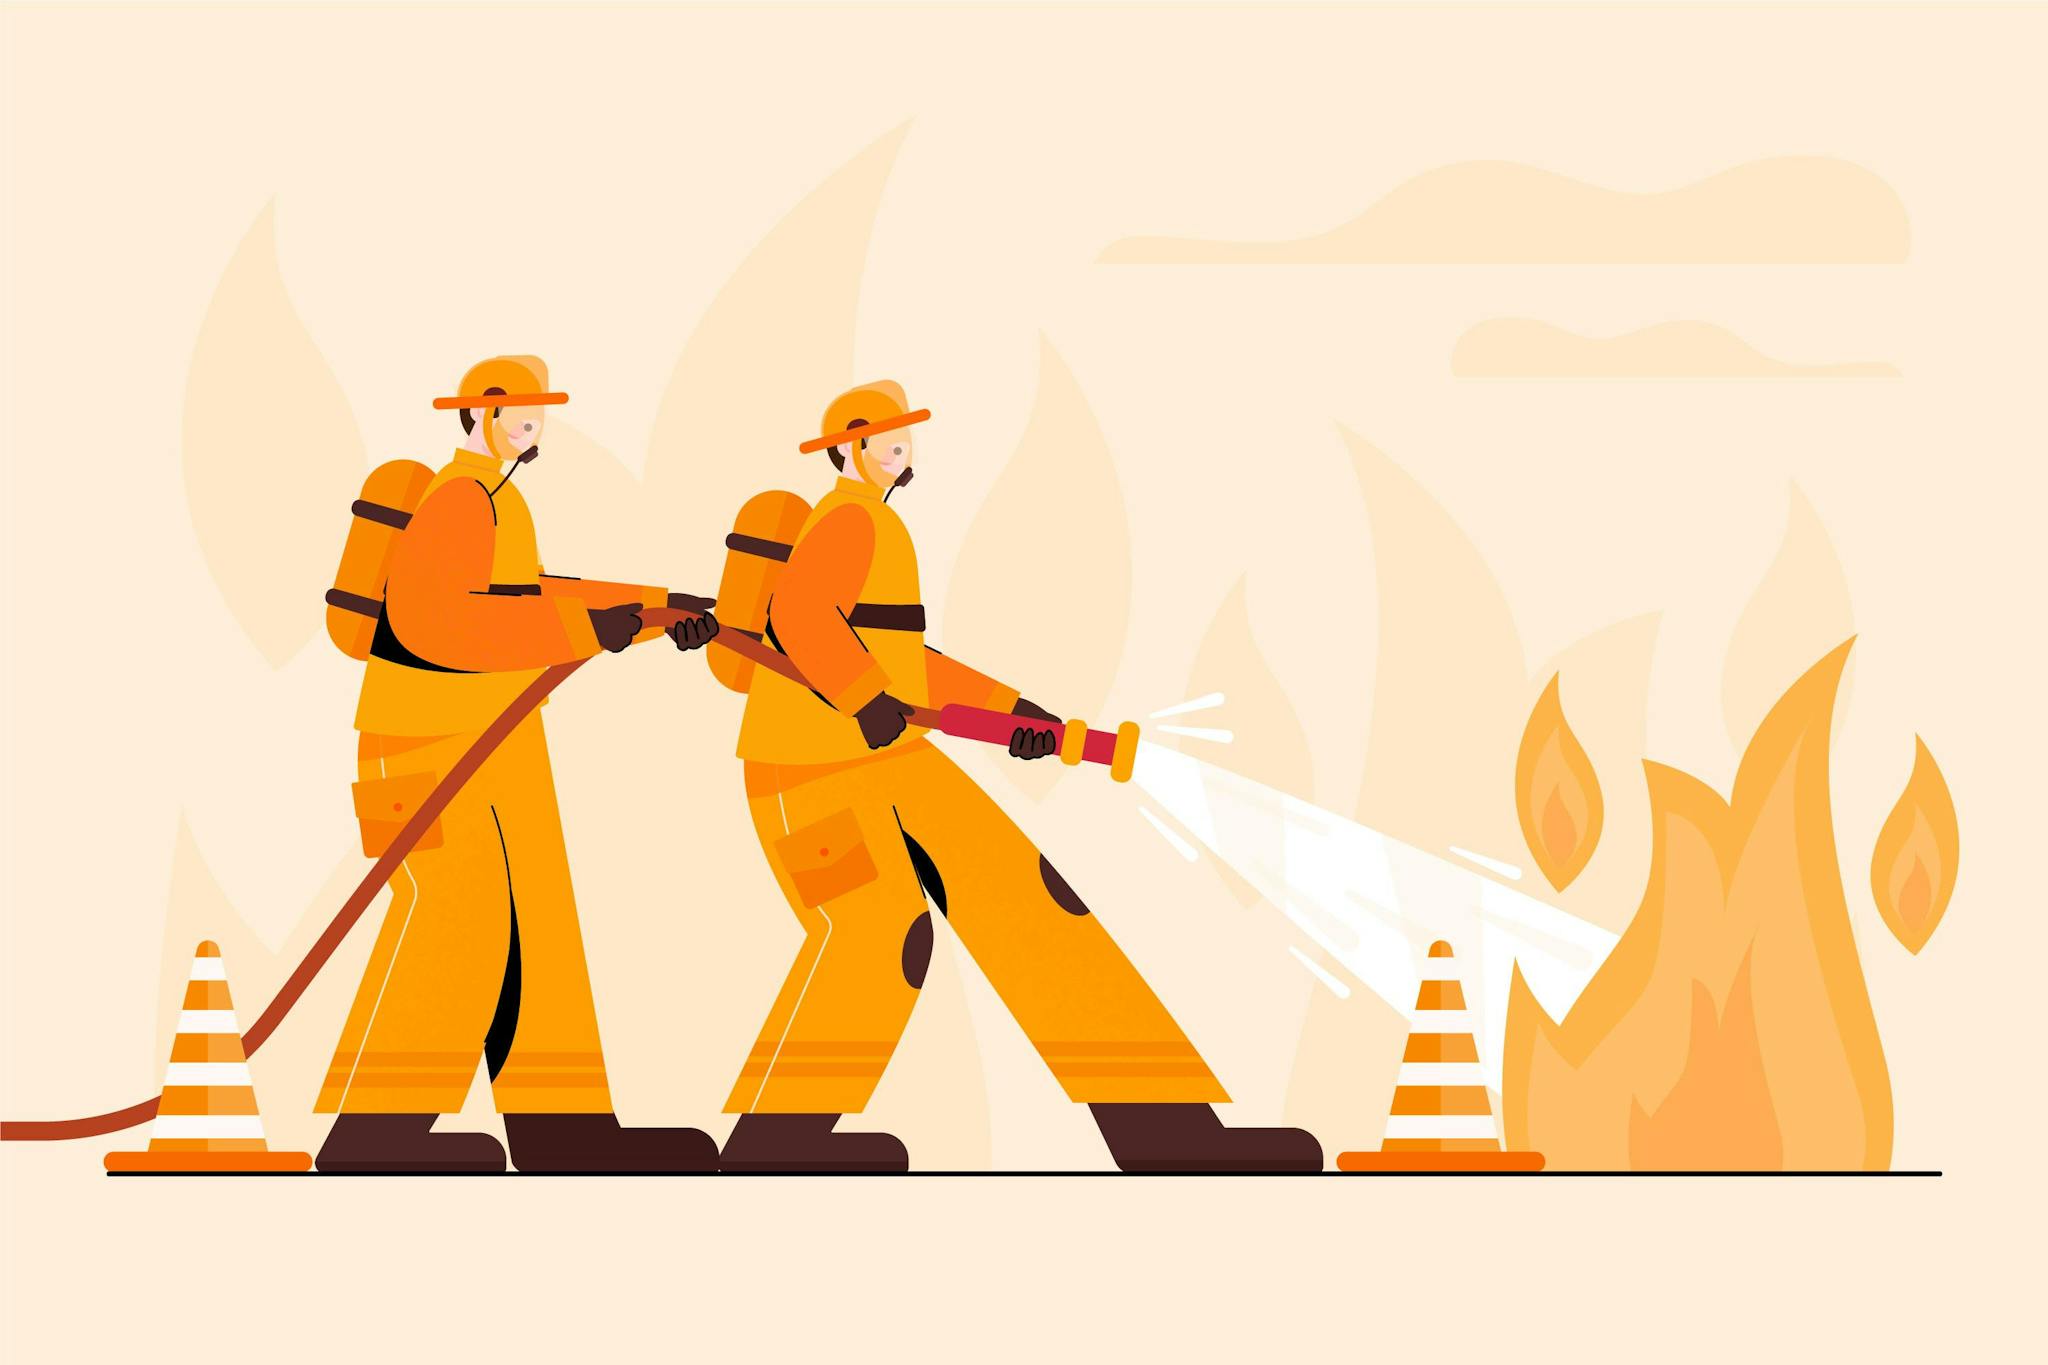 Illustration zwei feuerwehrmänner löschen ein feuer mit wasser